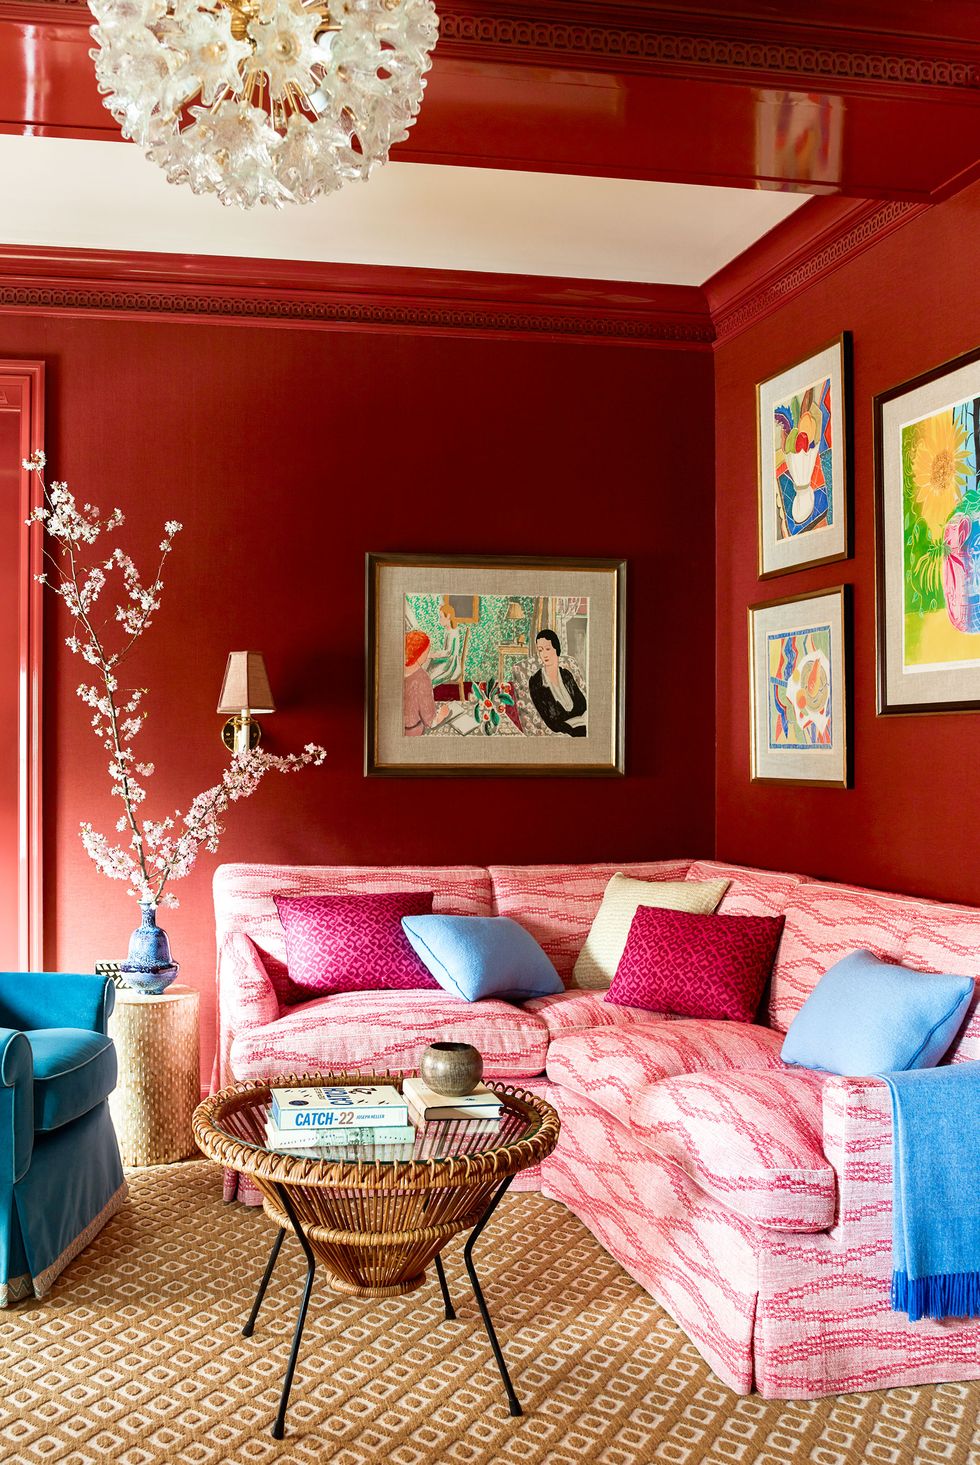 Hình ảnh một góc phòng khách với tường sơn đỏ cam, tranh treo tường bắt mắt, đèn chùm sang trọng